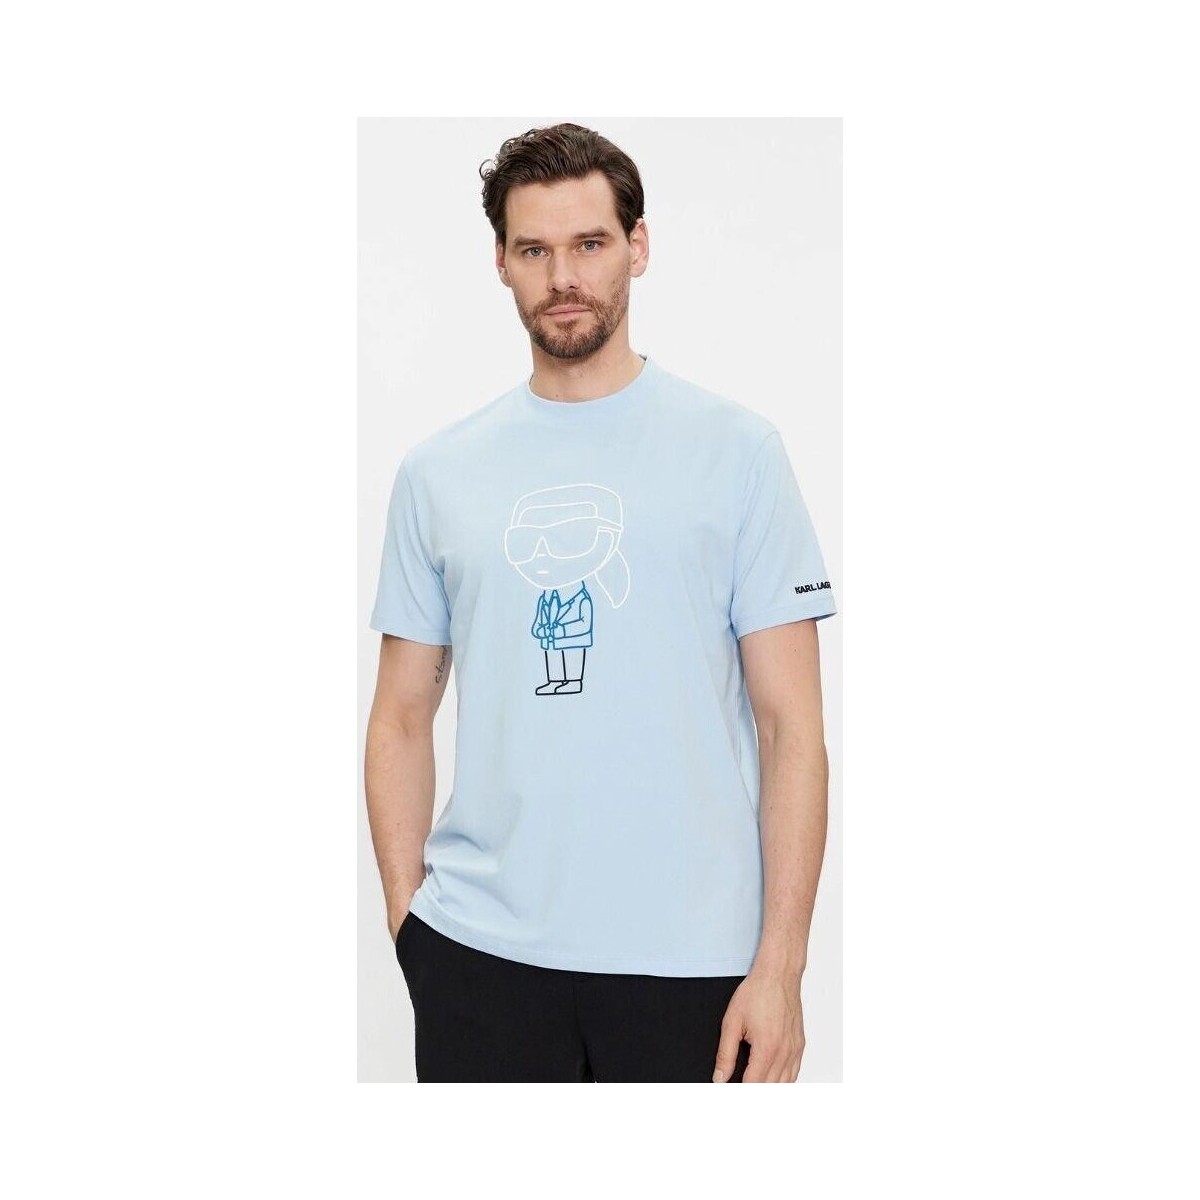 textil Herr T-shirts Karl Lagerfeld 541221 755401 Blå